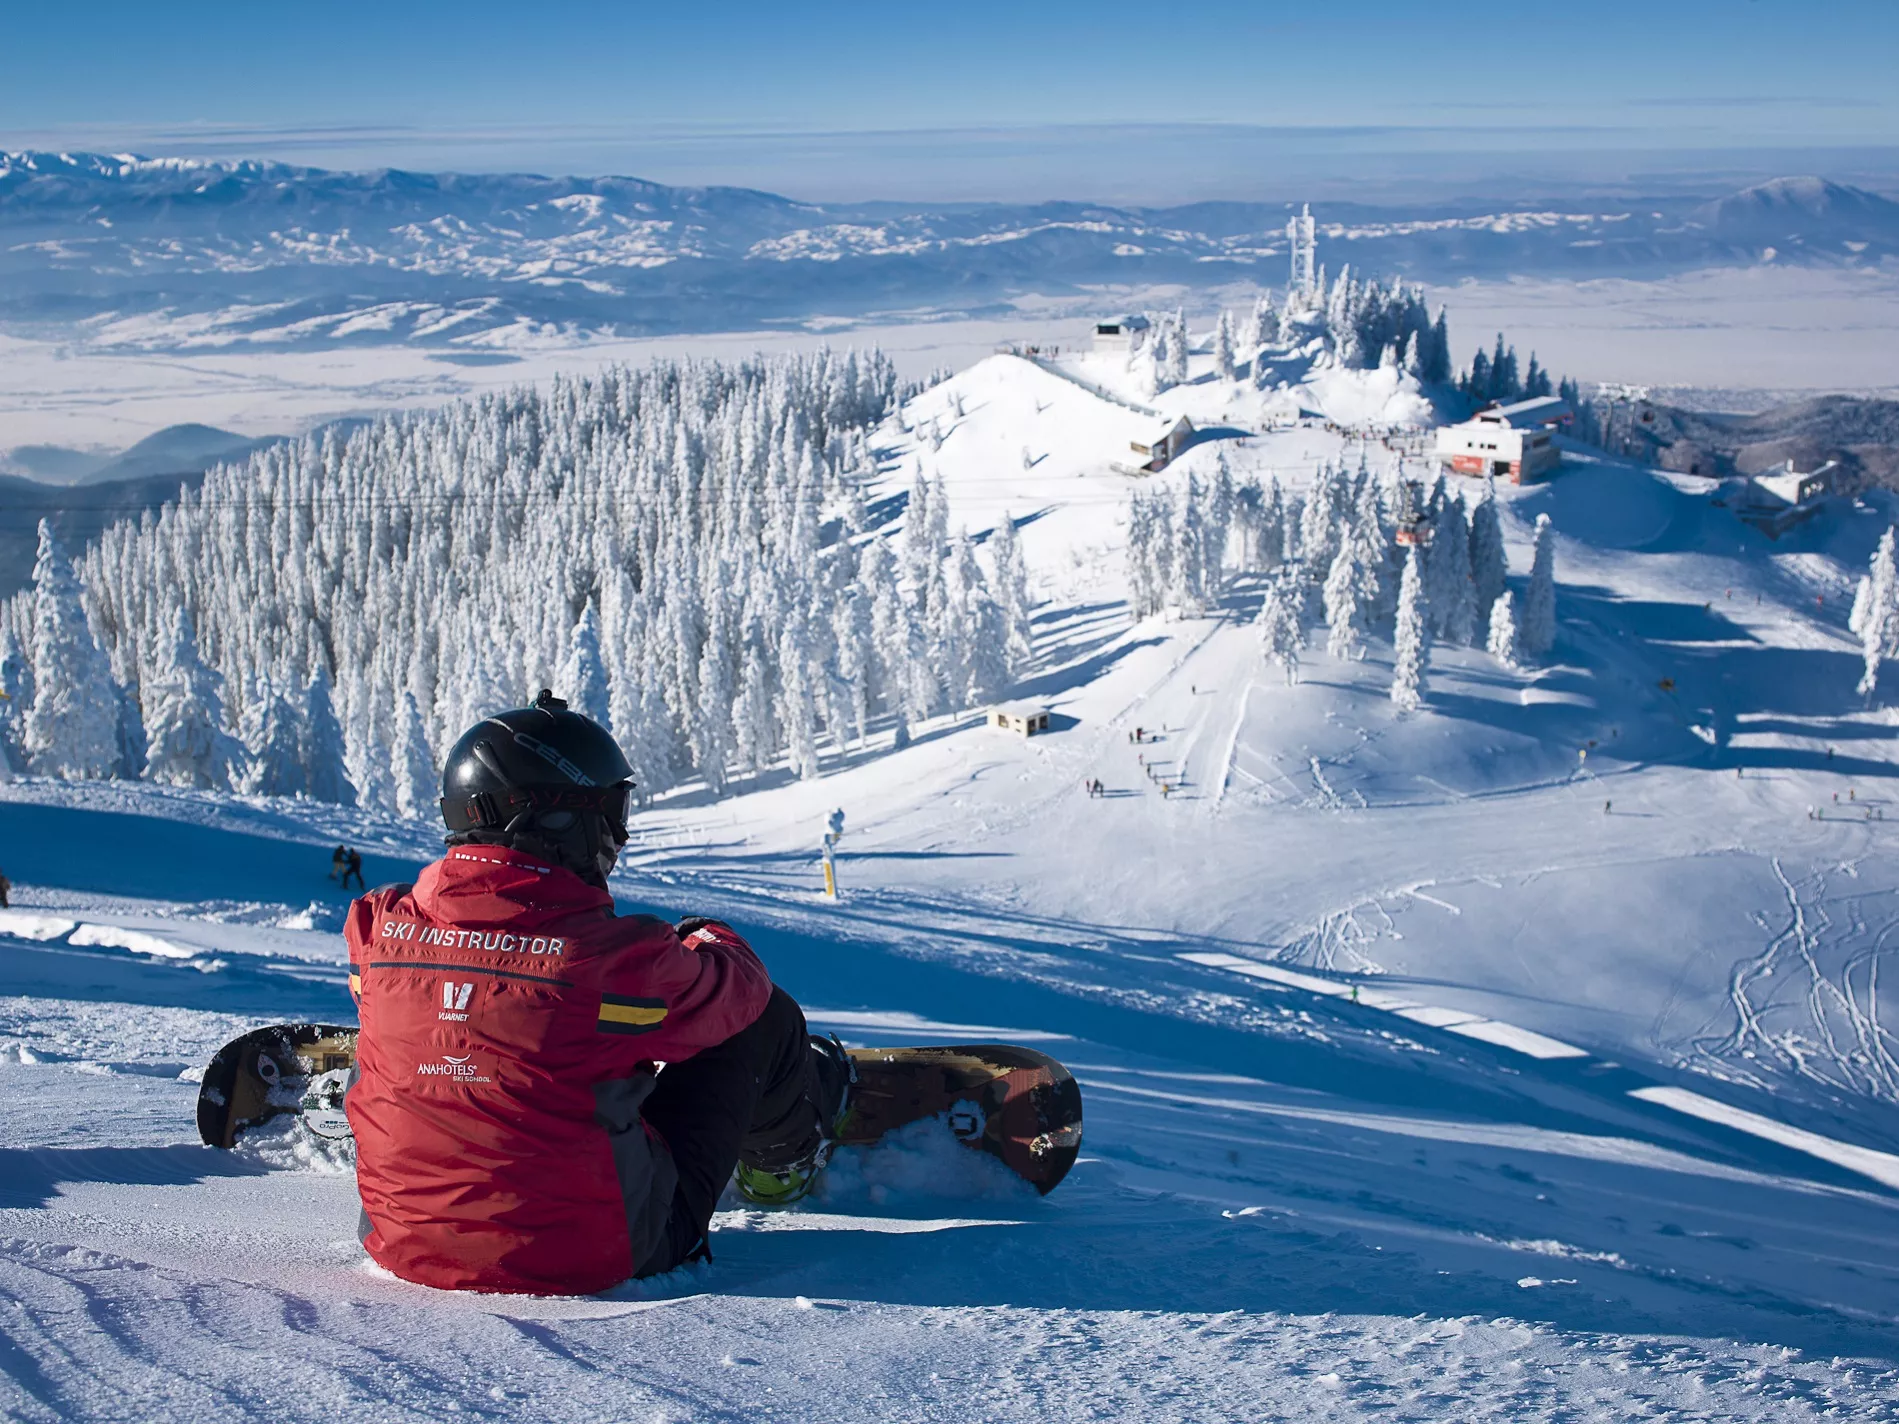 Nan Schi Club in Romania, Europe | Snowboarding,Skiing - Rated 0.9